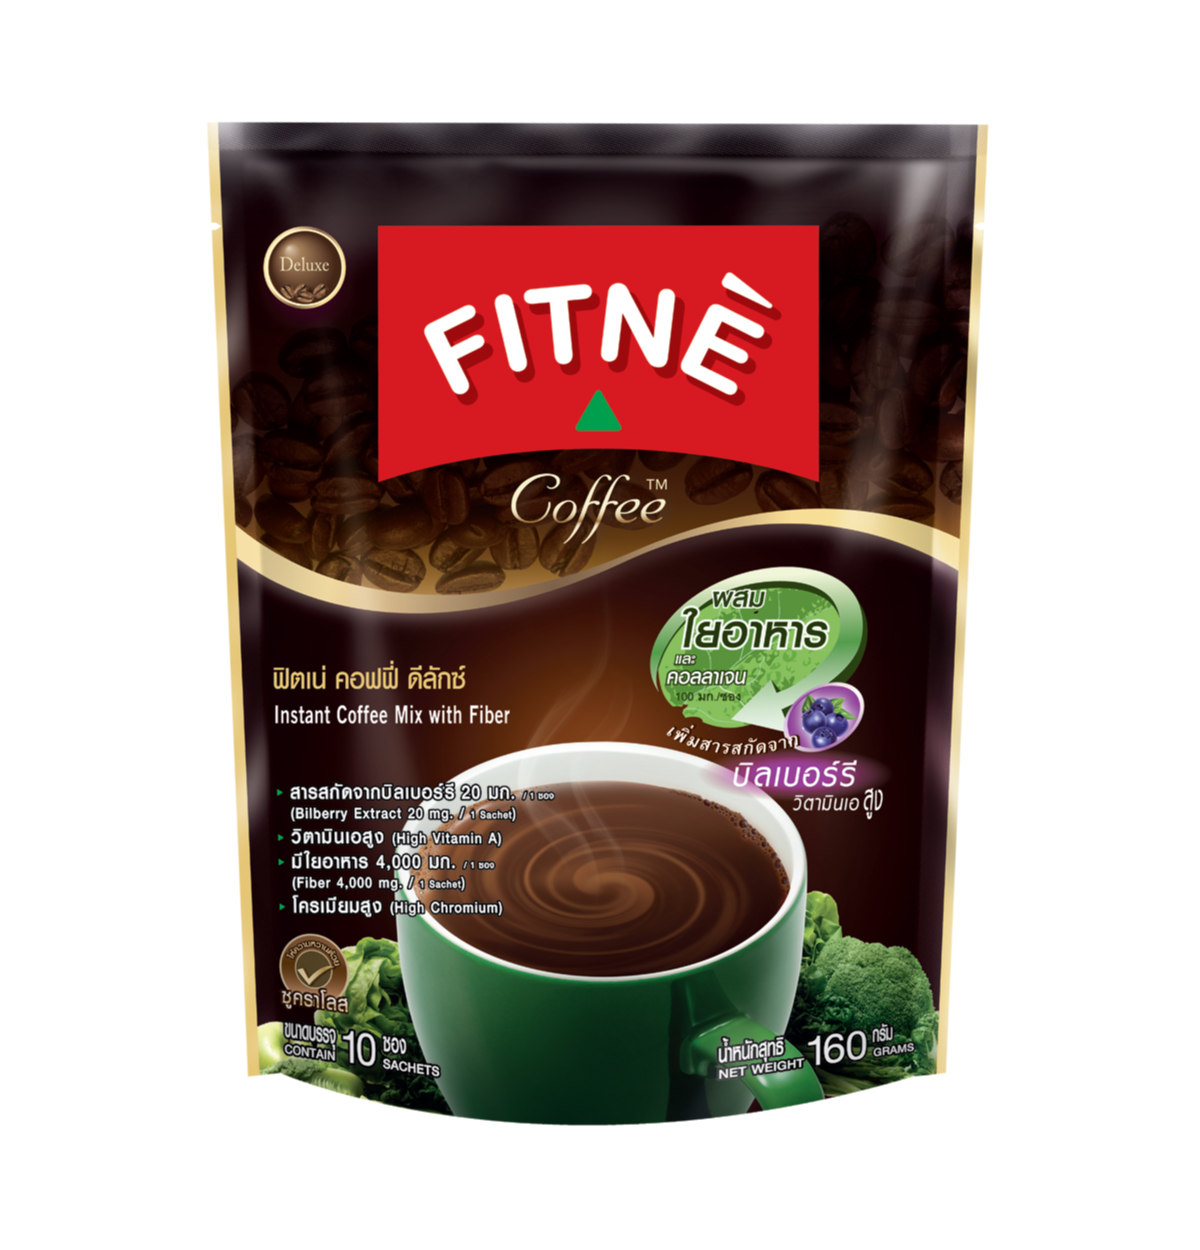 FITNE' Coffee Instant Coffee Mix with Fiber 16g.x10 Sticks